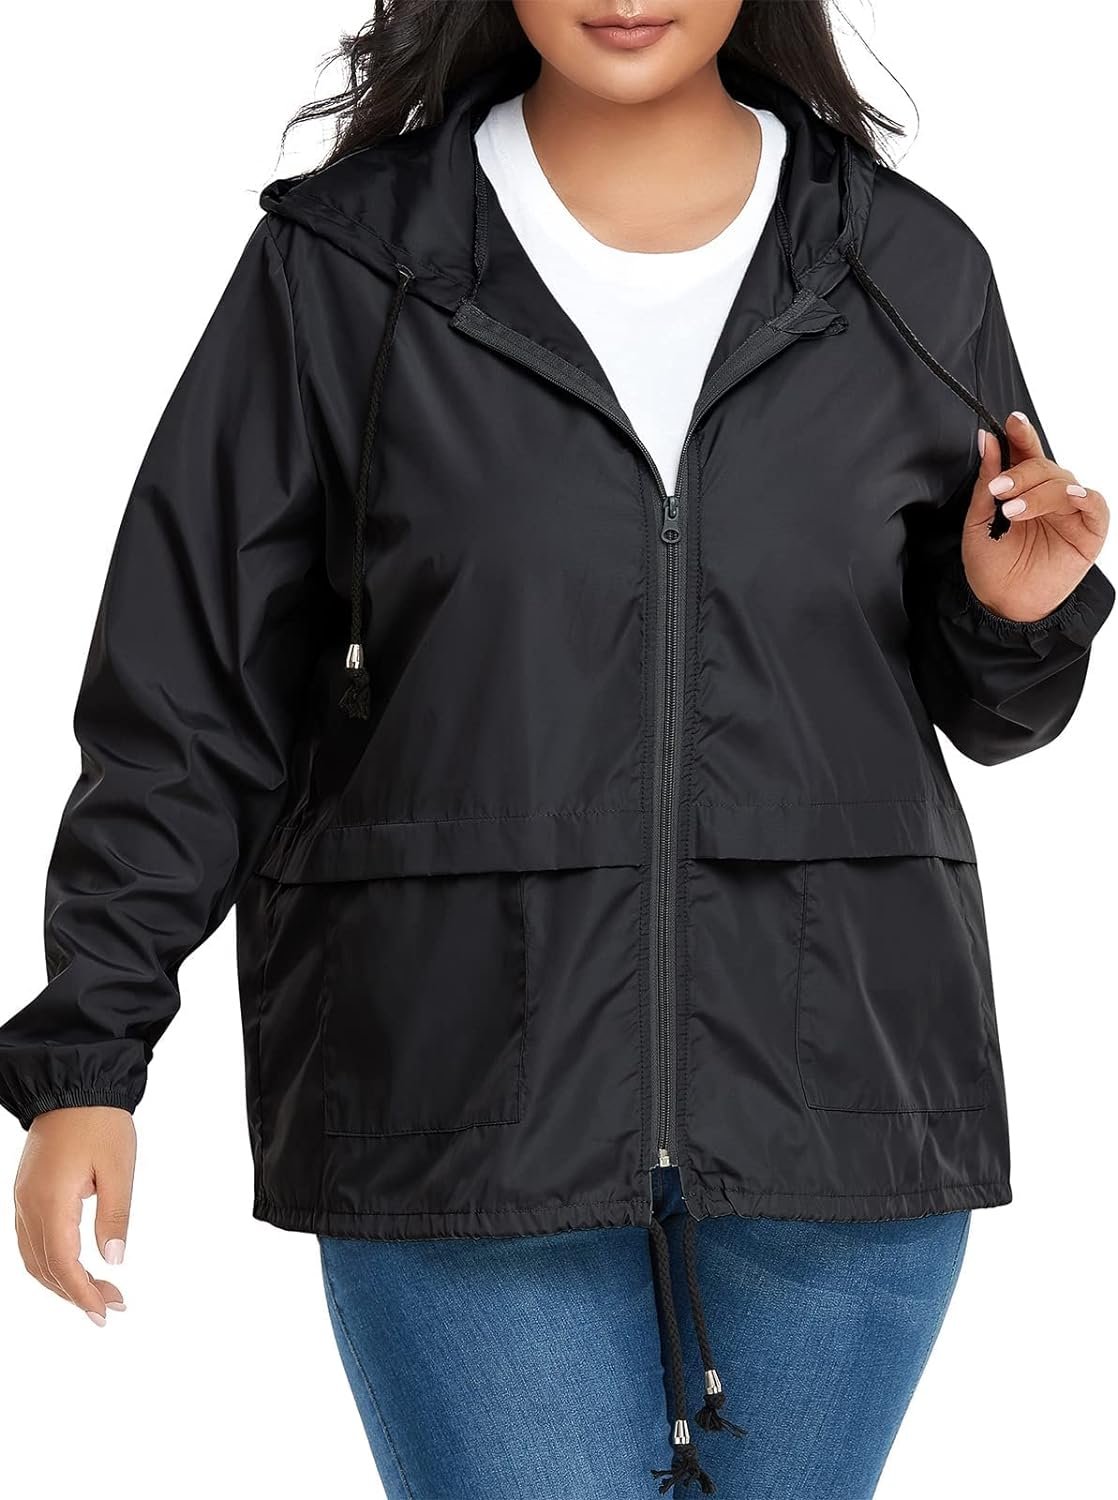 Century Star Plus Size Rain Jackets for Women Waterproof Windbreaker Jacket Womens Raincoats with Hood Lightweight Packable